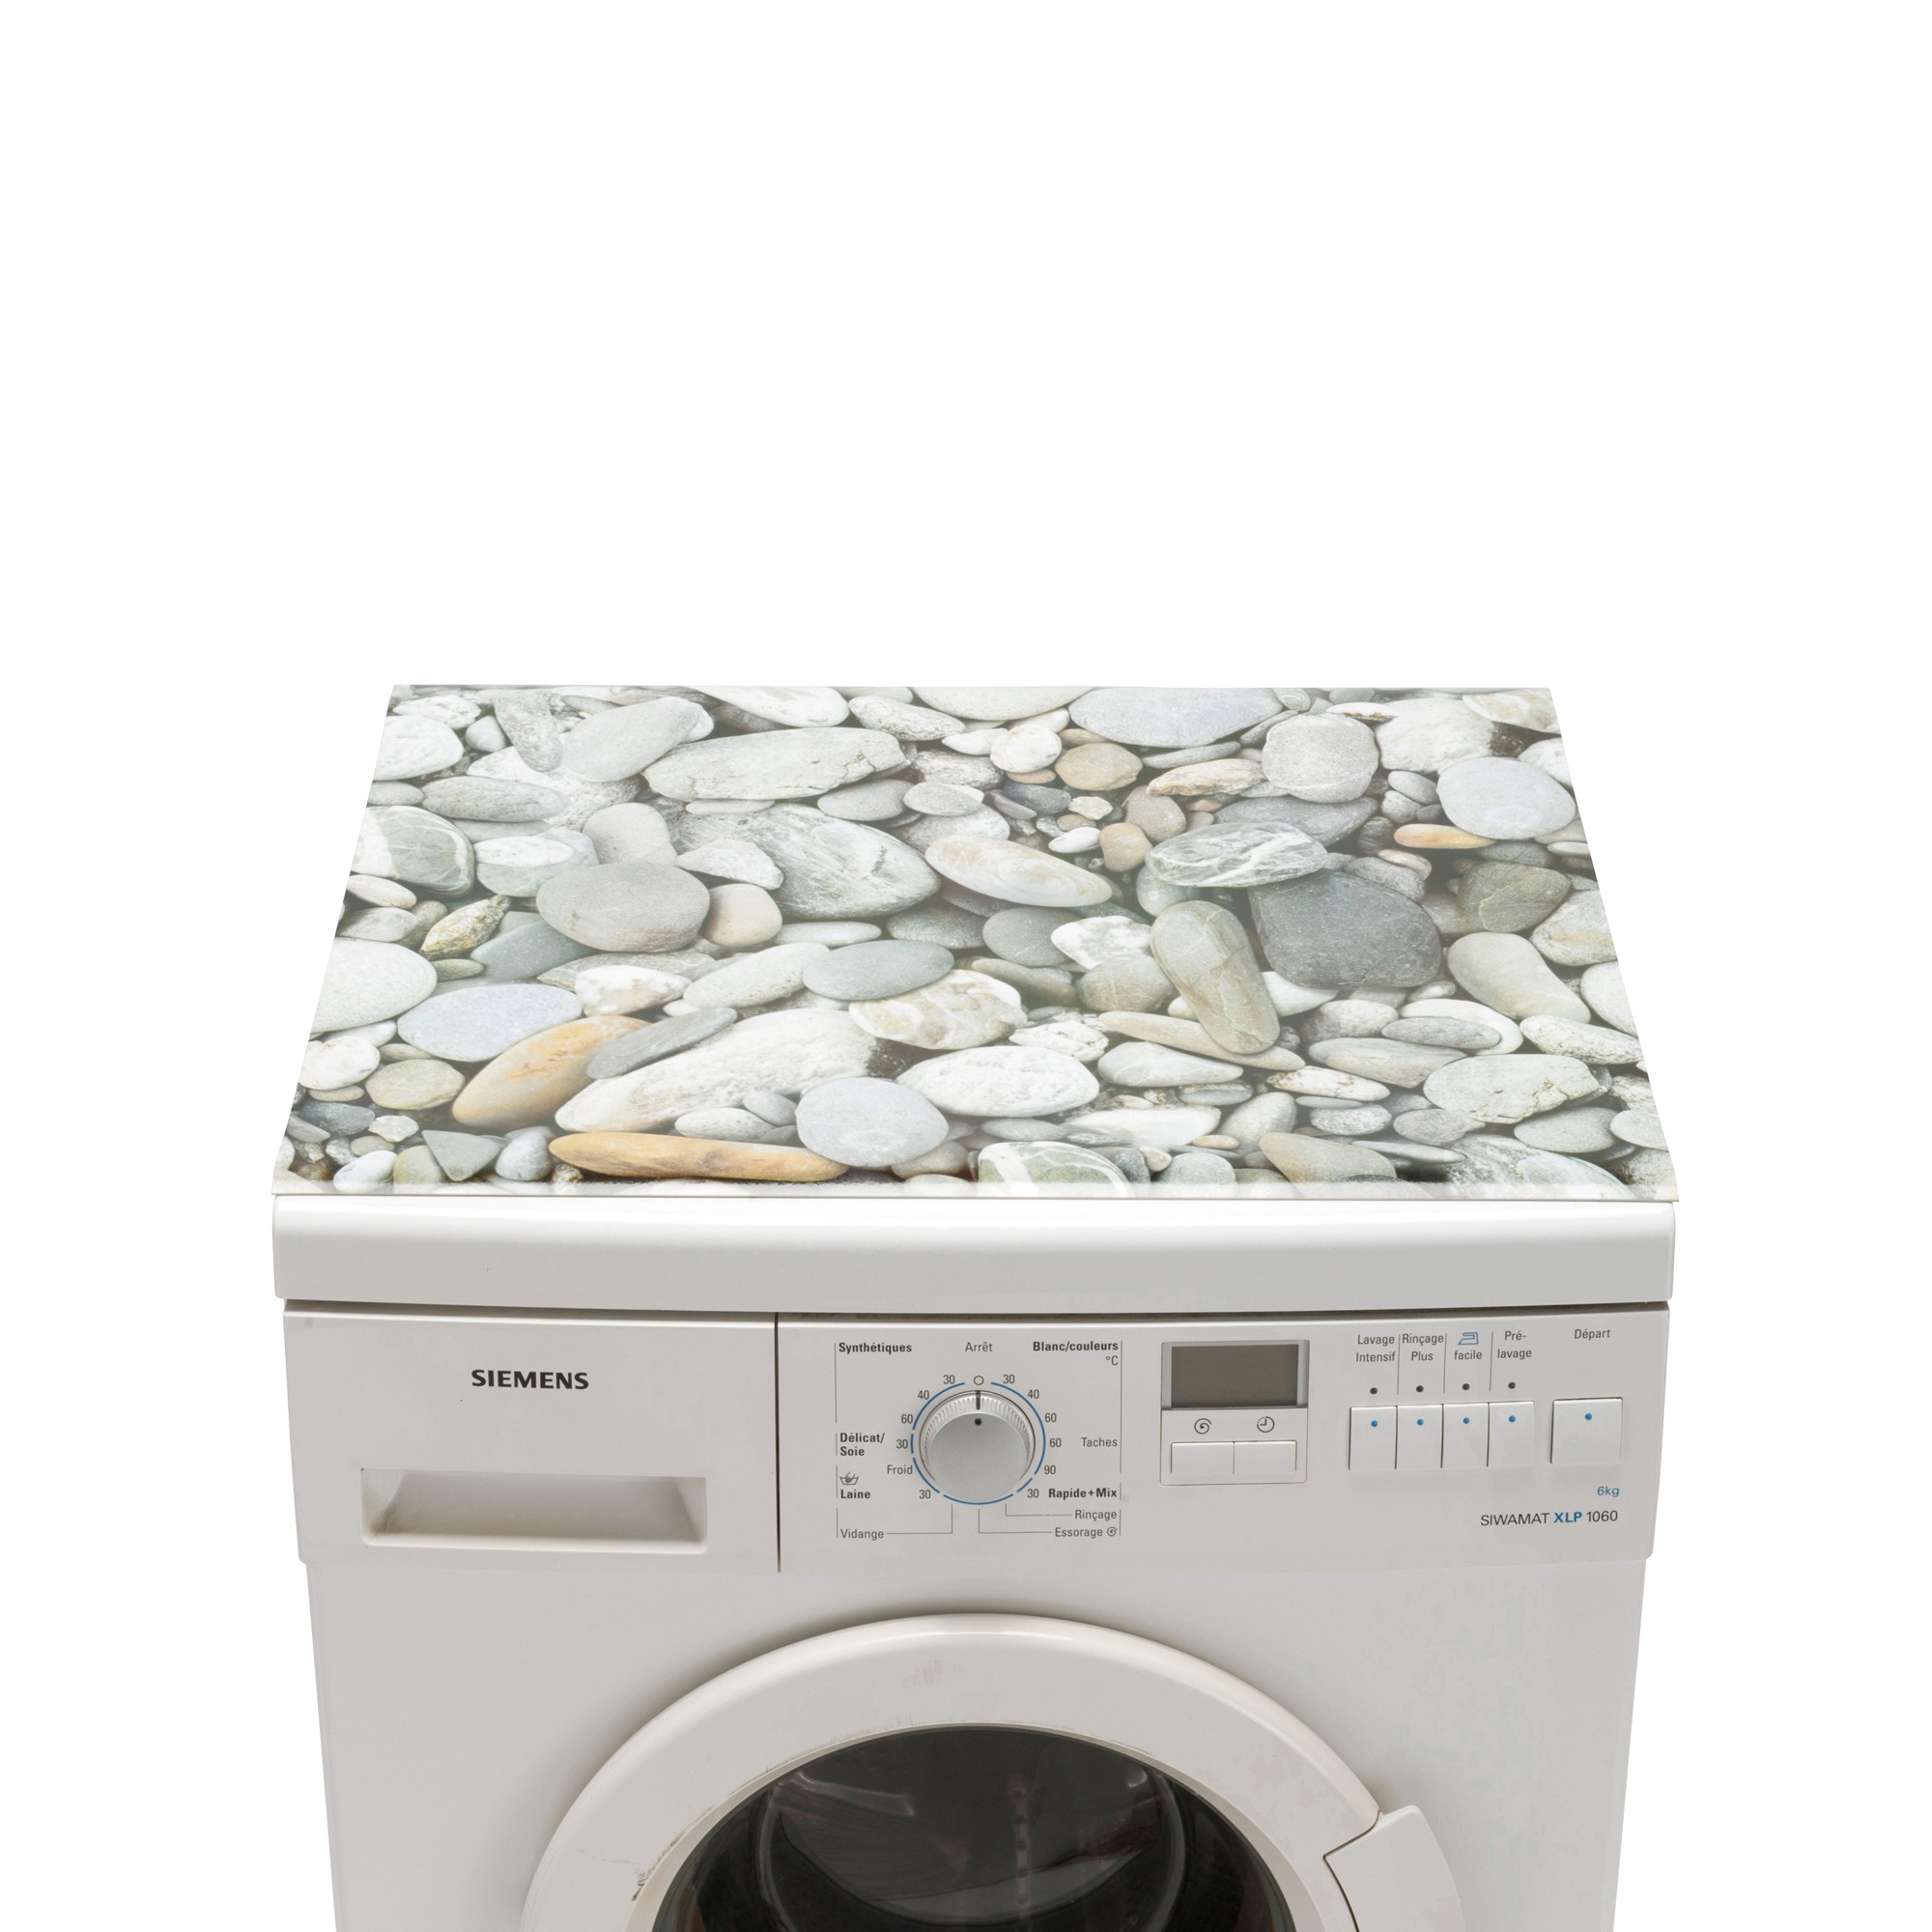 Protège machine à laver - Tapis de machine à laver - Sextant noir et cuivre  pour